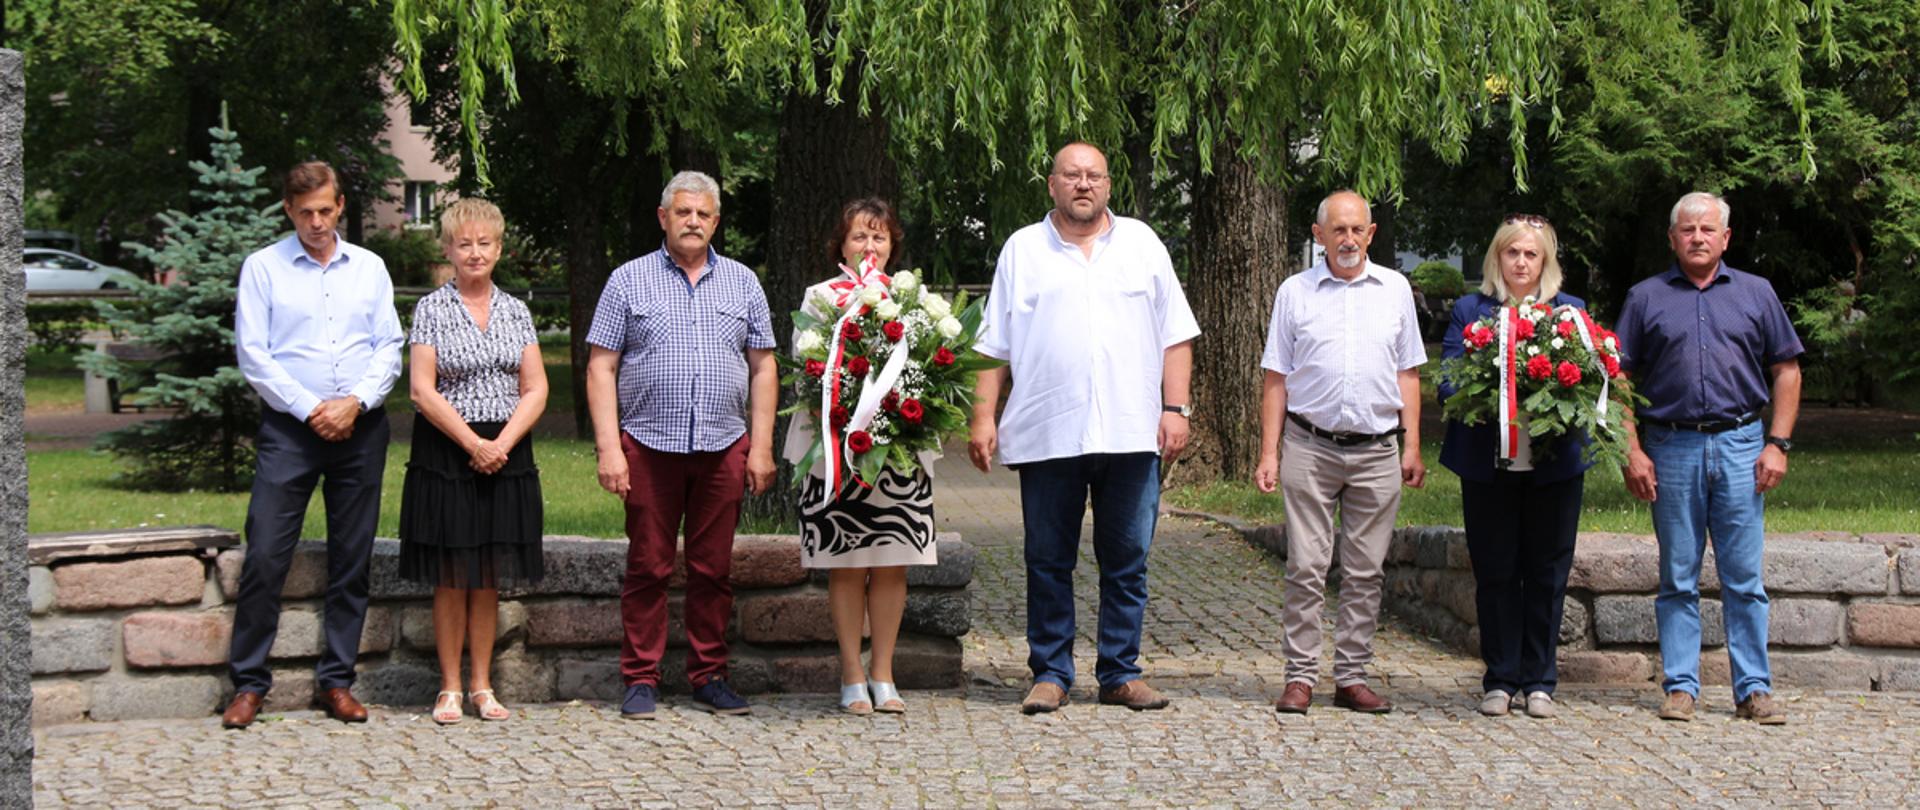 Grupowe zdjęcie uczestników uroczystości na tle parku im. A. Mickiewicza w Sokołowie Podlaskim